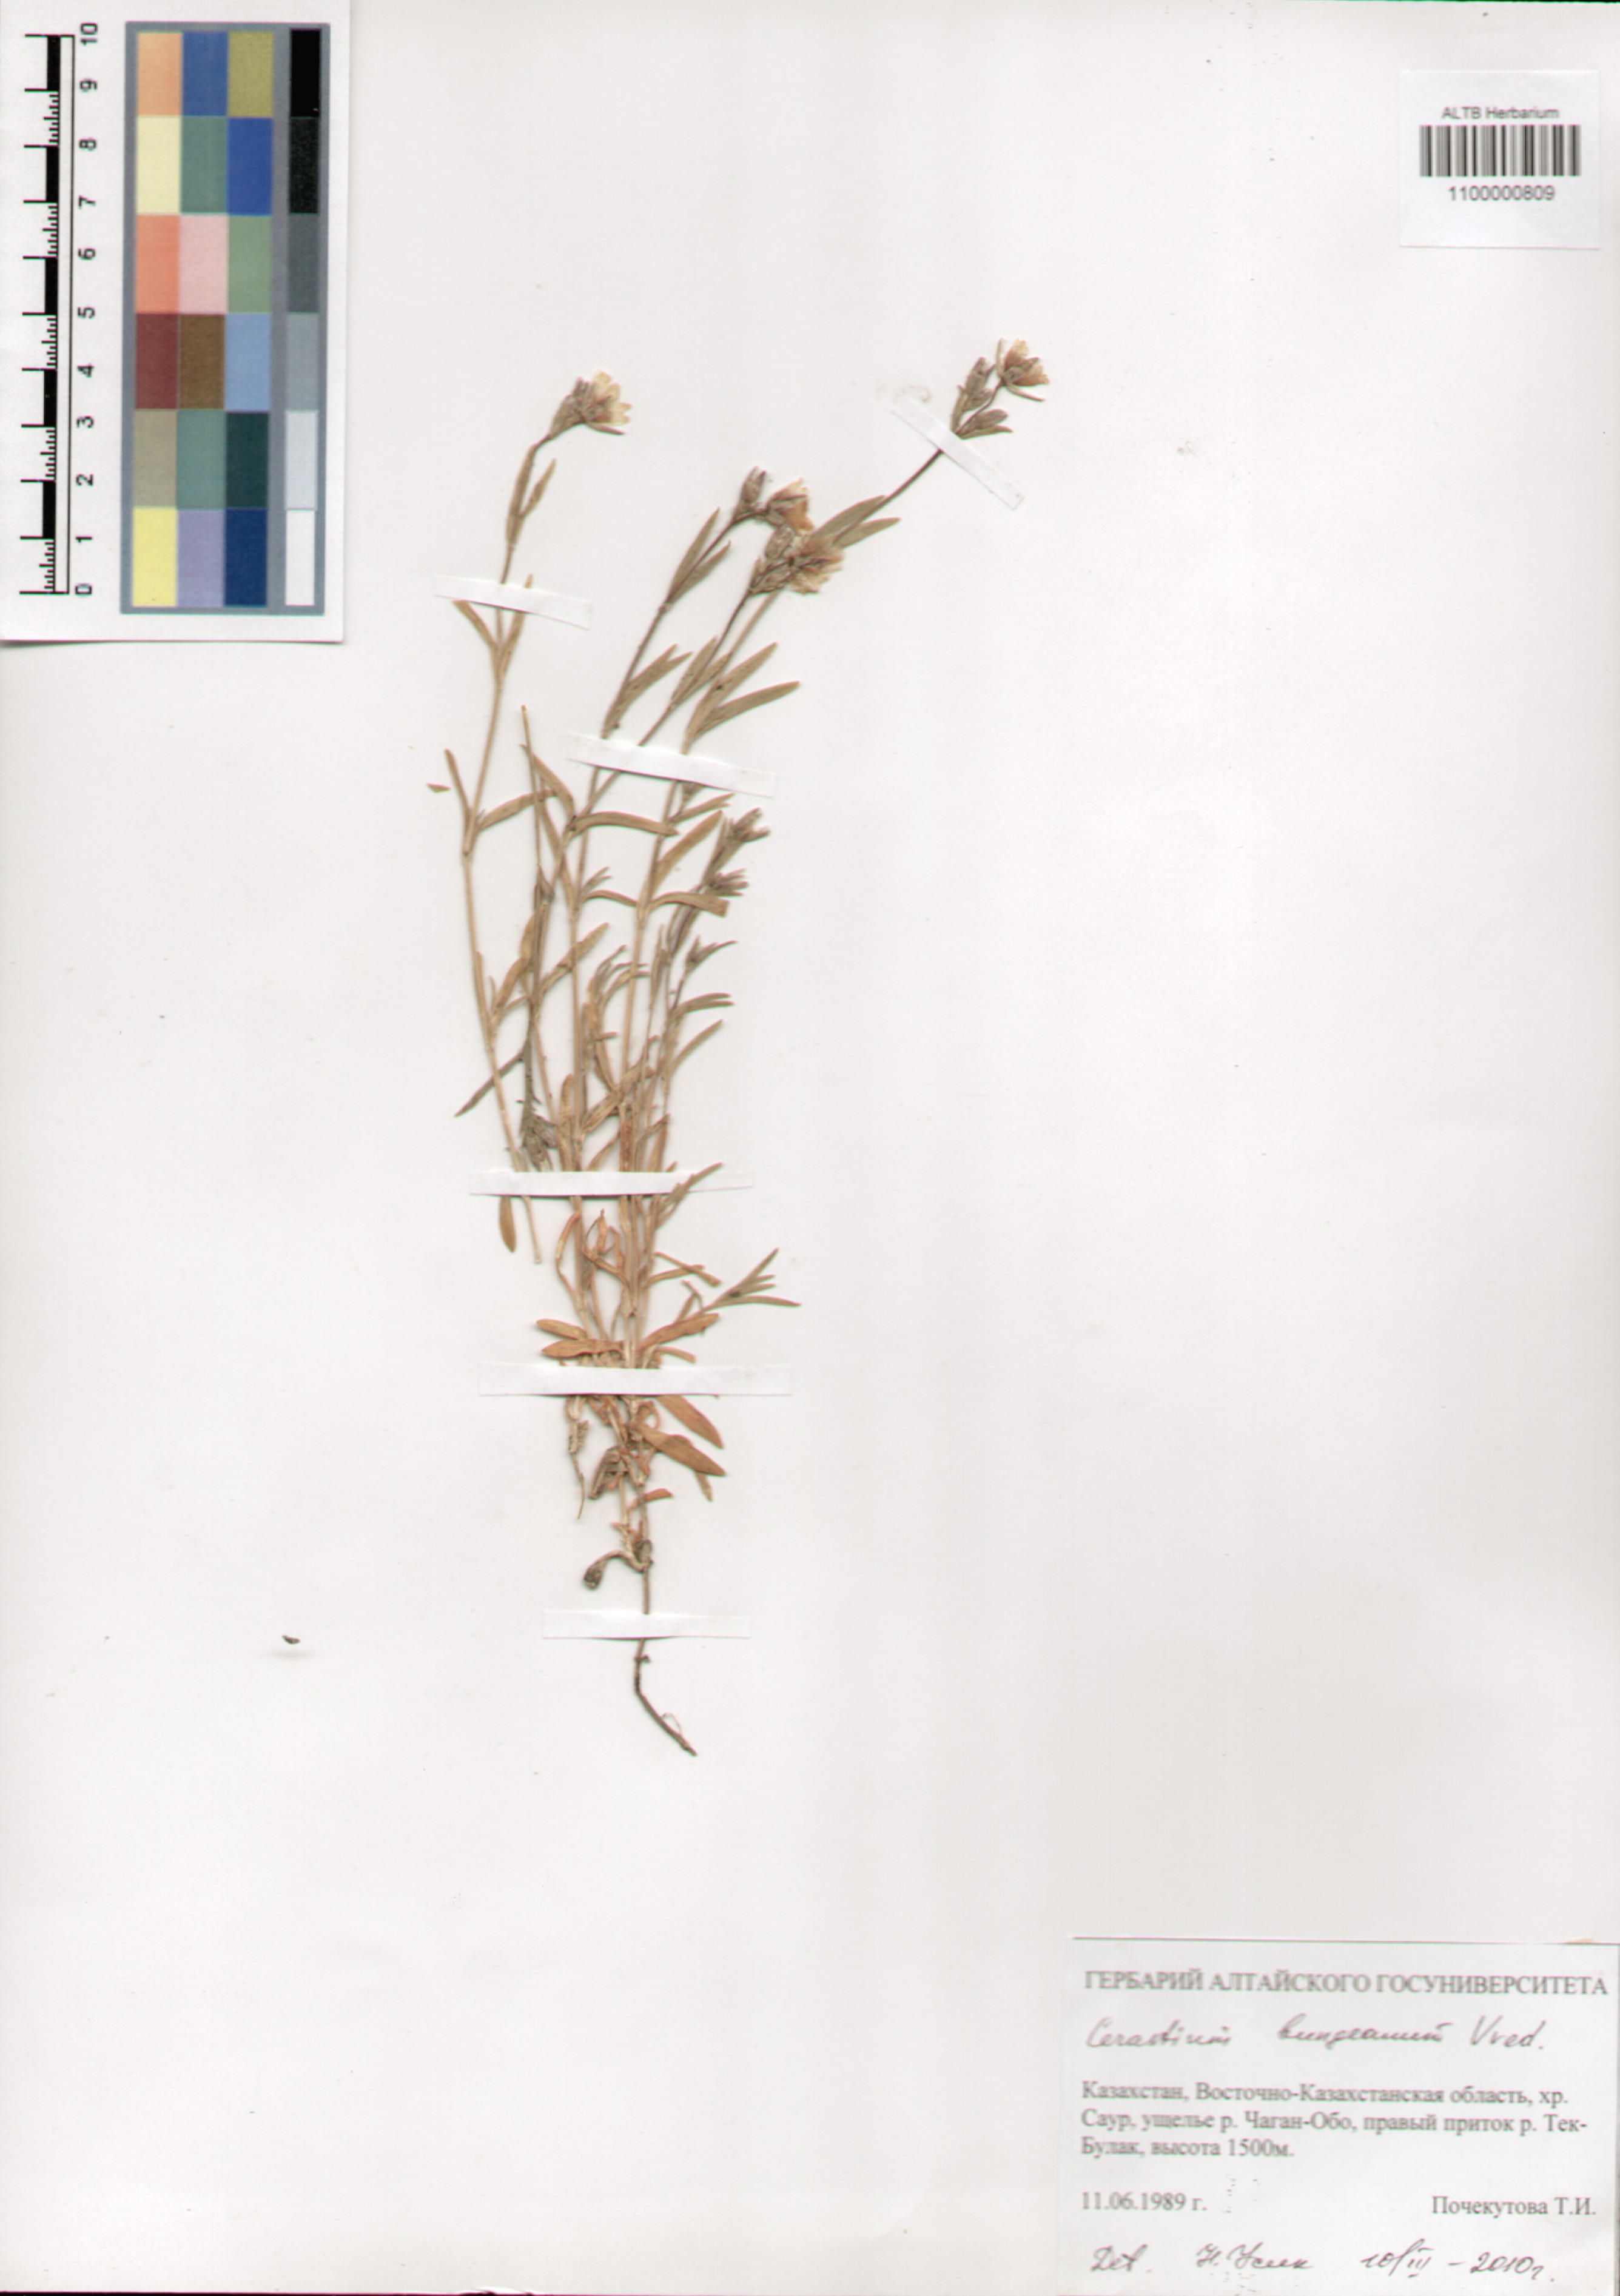 Caryophyllaceae,Cerastium bungeanum Vved.